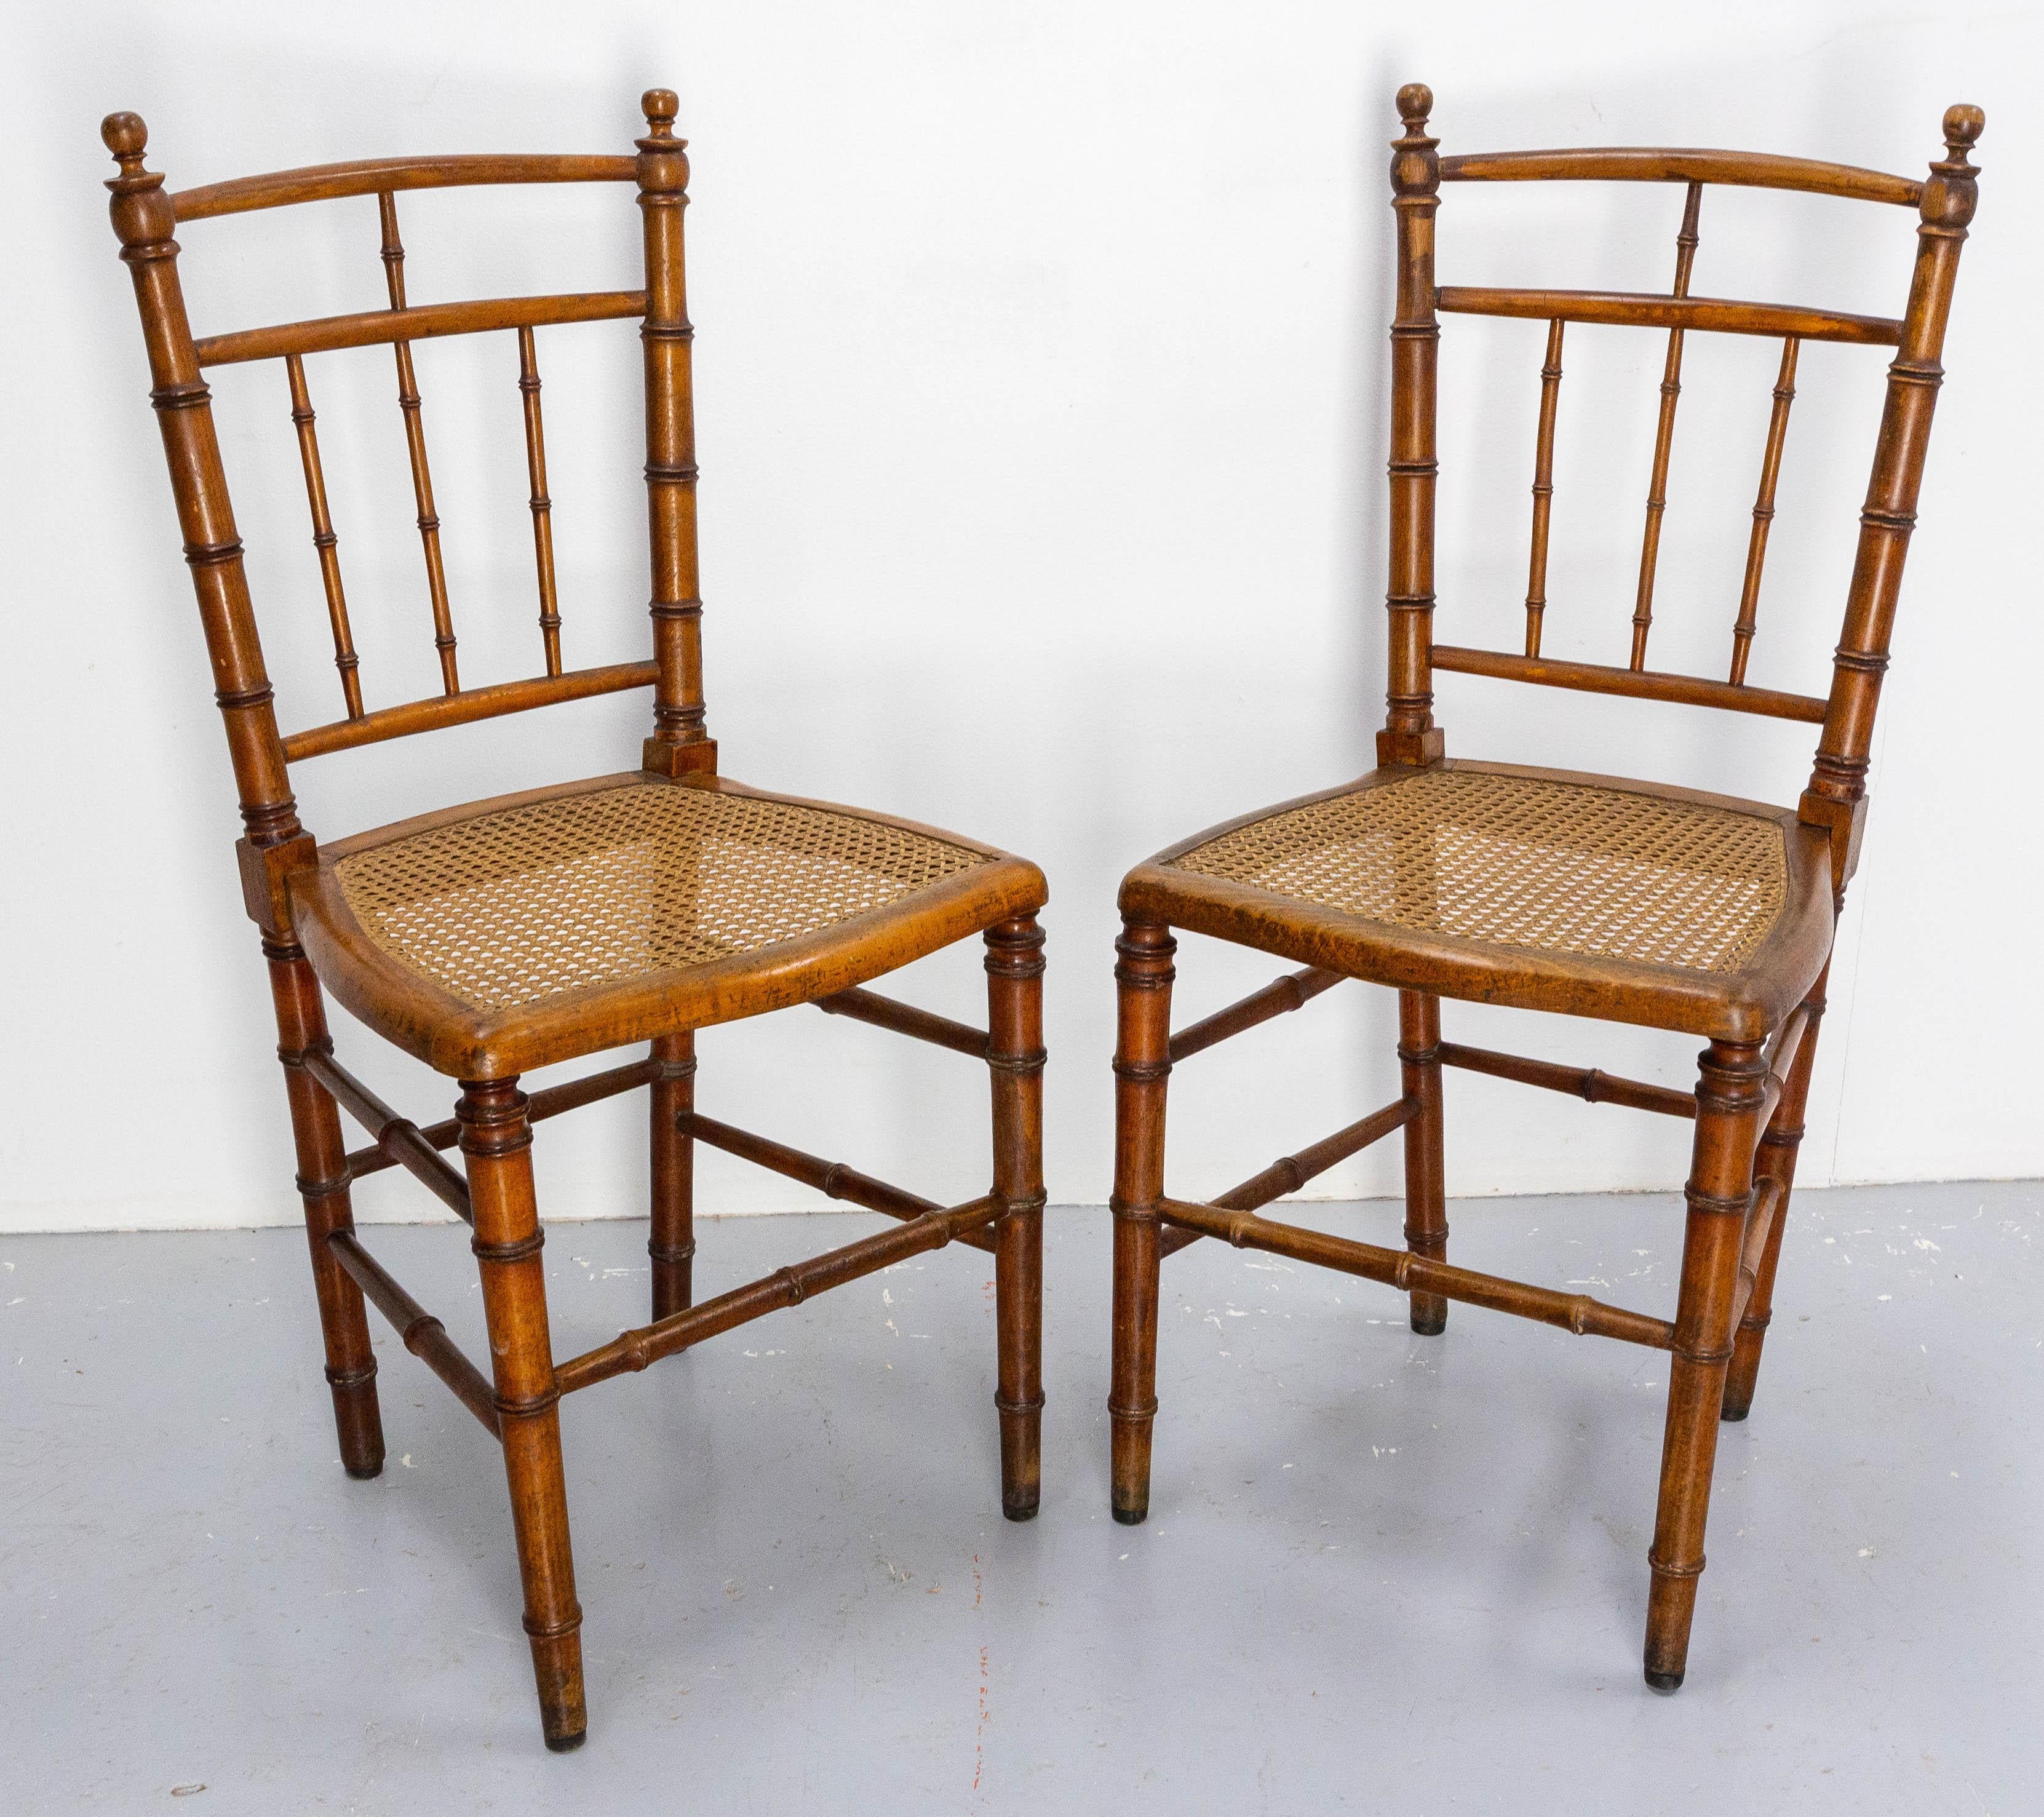 Zwei französische Stühle Napoleon III, hergestellt um 1880. 
Buche und Schilfrohr im Faux-Bambou-Stil.
Antike, spätes 19. Jahrhundert.
Solide und solide.

Versand:
L42 / H 89 / P 55 cm 13 kg.